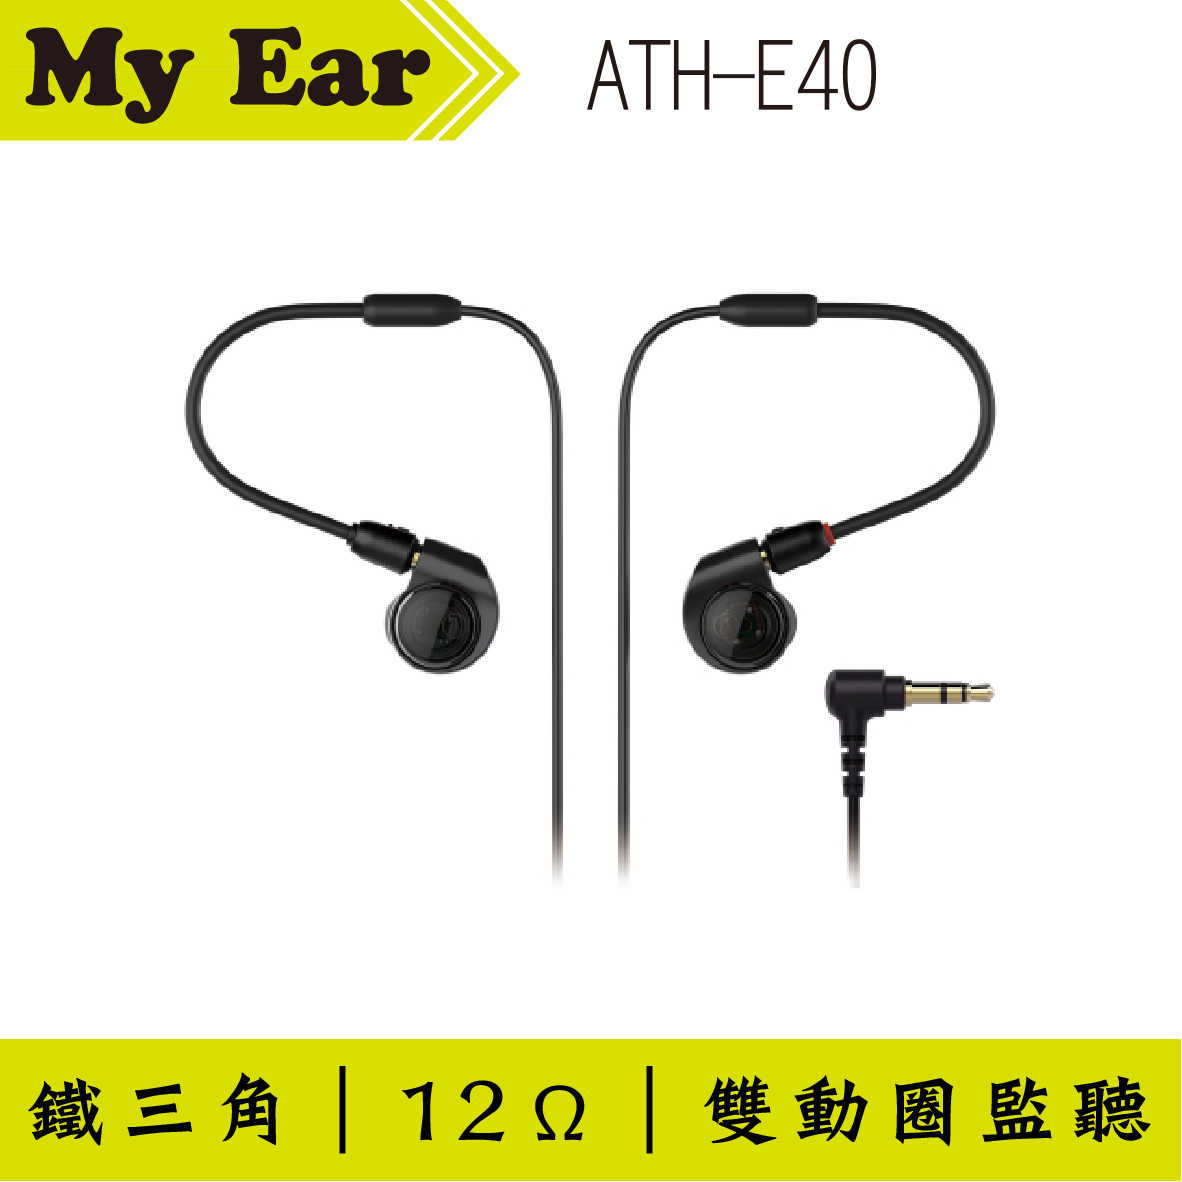 鐵三角 ATH-E40 雙動圈 耳道式 監聽耳機 | My Ear 耳機專門店